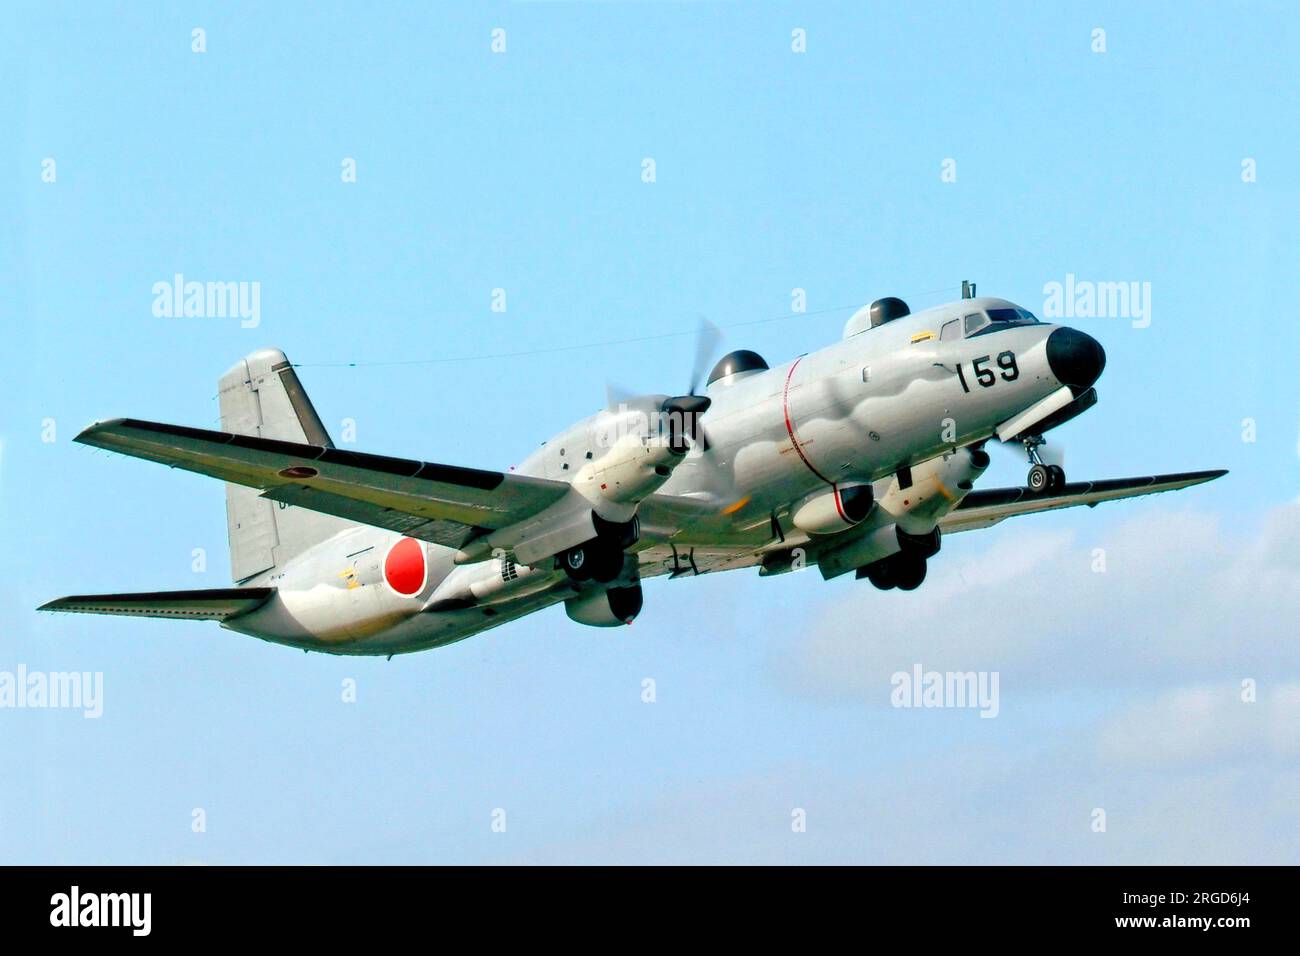 Force d'autodéfense aérienne japonaise - NAMC YS-11EB 02-1159 (msn 2151) Banque D'Images